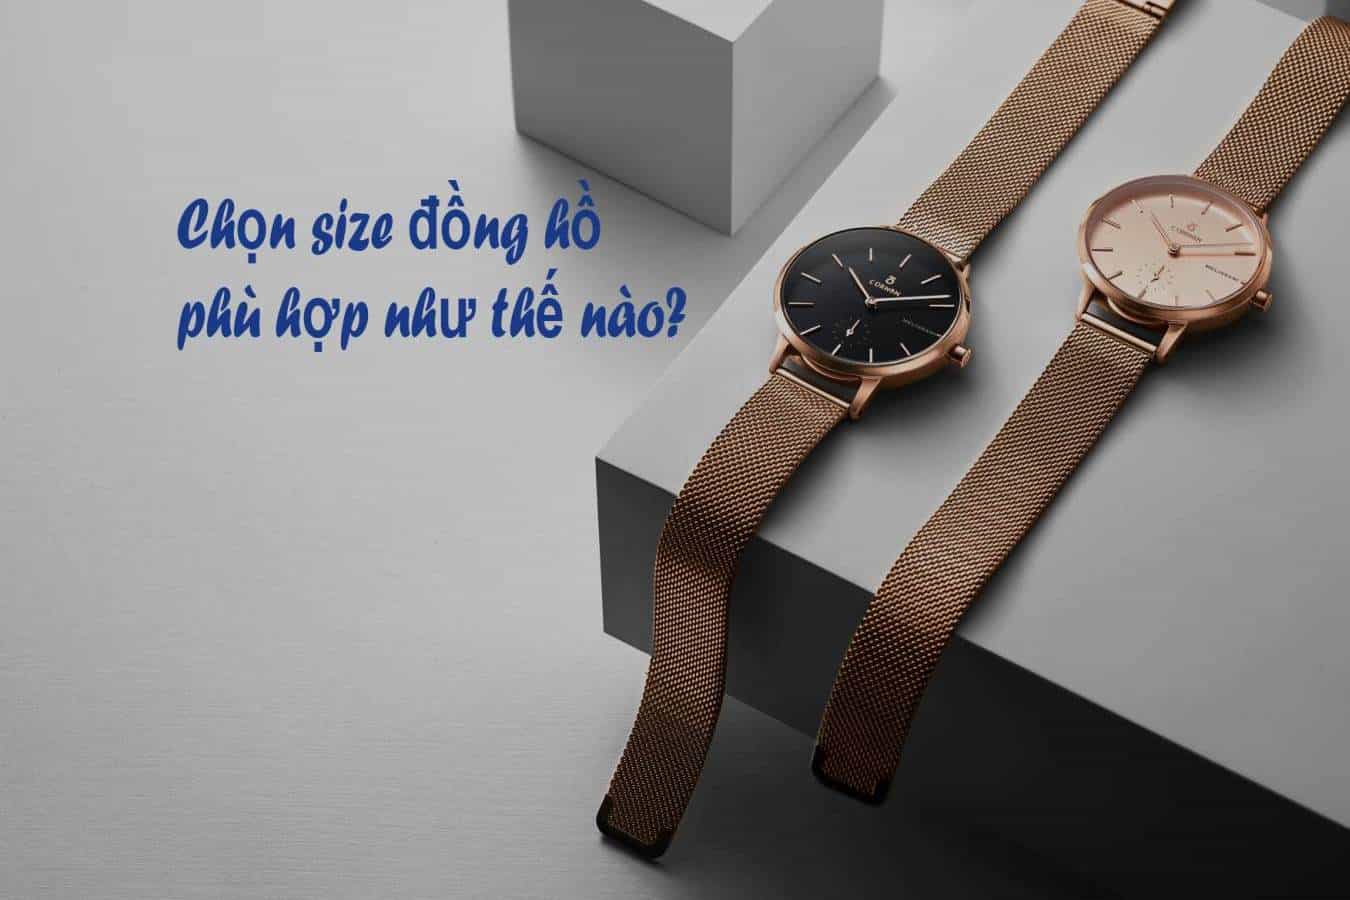 Chọn size đồng hồ phù hợp nhất theo kích thước cổ tay thế nào?